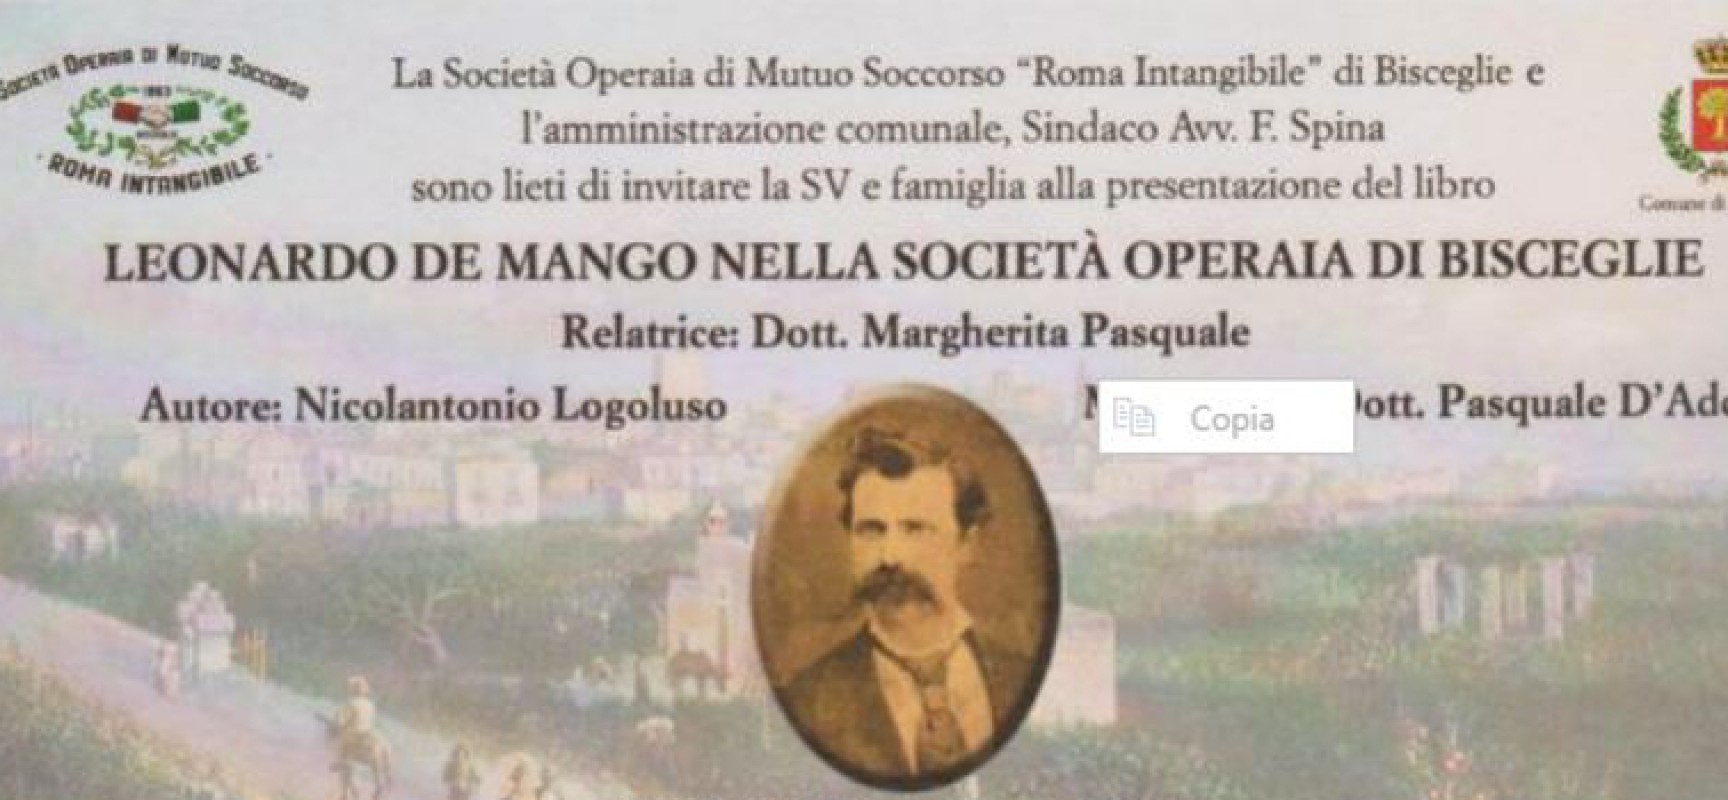 La Società Operaia di Mutuo Soccorso “Roma Intangibile” ricorda Leonardo De Mango